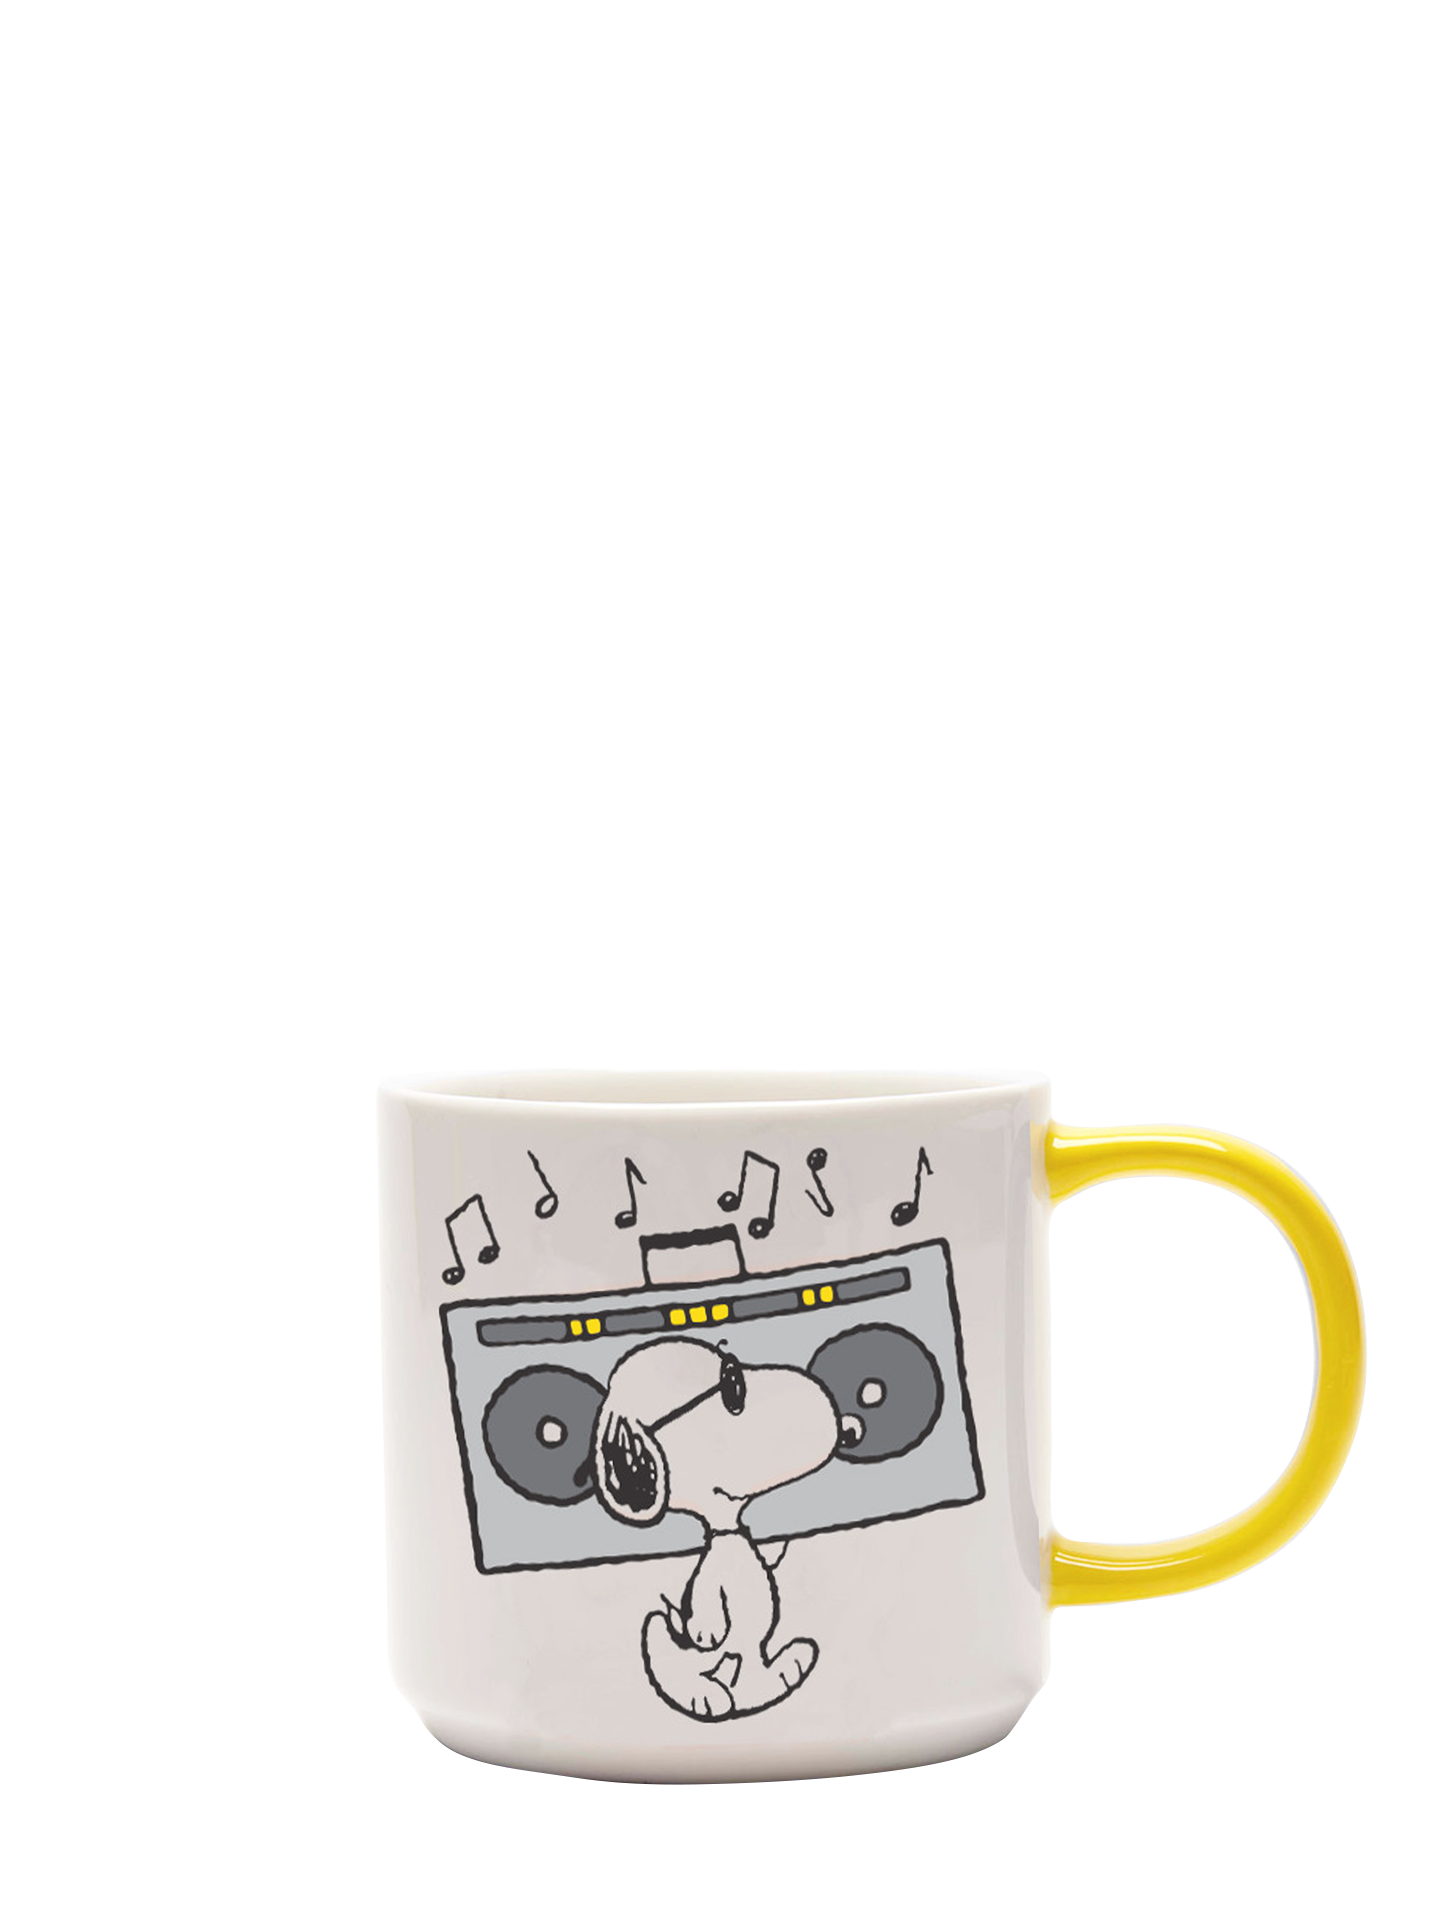 Peanuts Mug, Music is Life